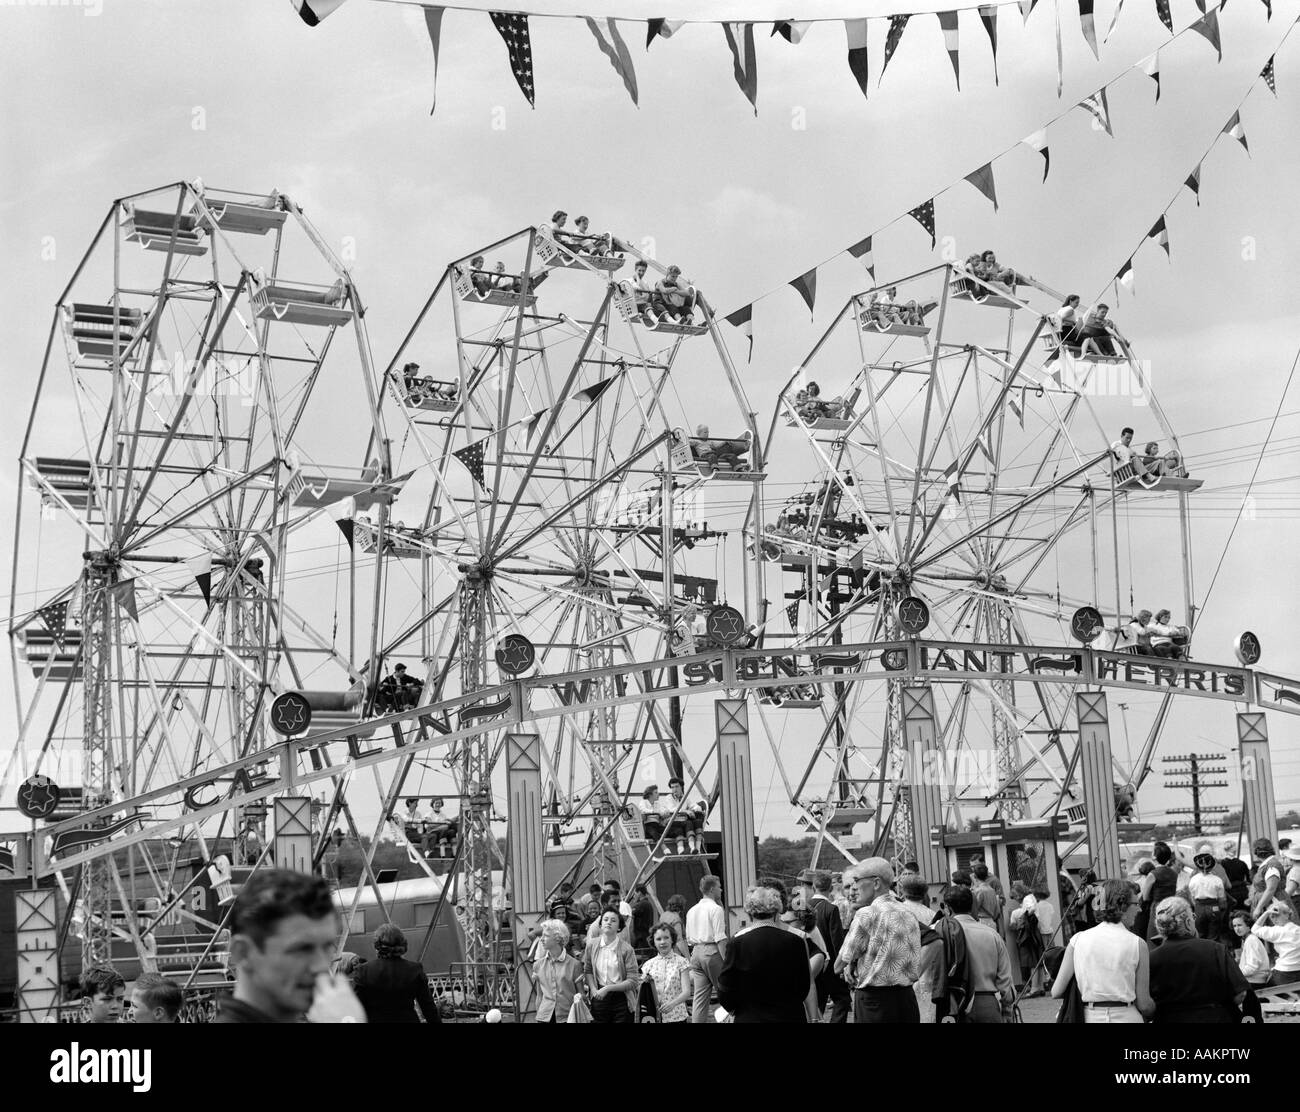 1950s FAIR SCENE SHOWING 3 GIANT FERRIS WHEELS & CROWD BELOW Stock Photo